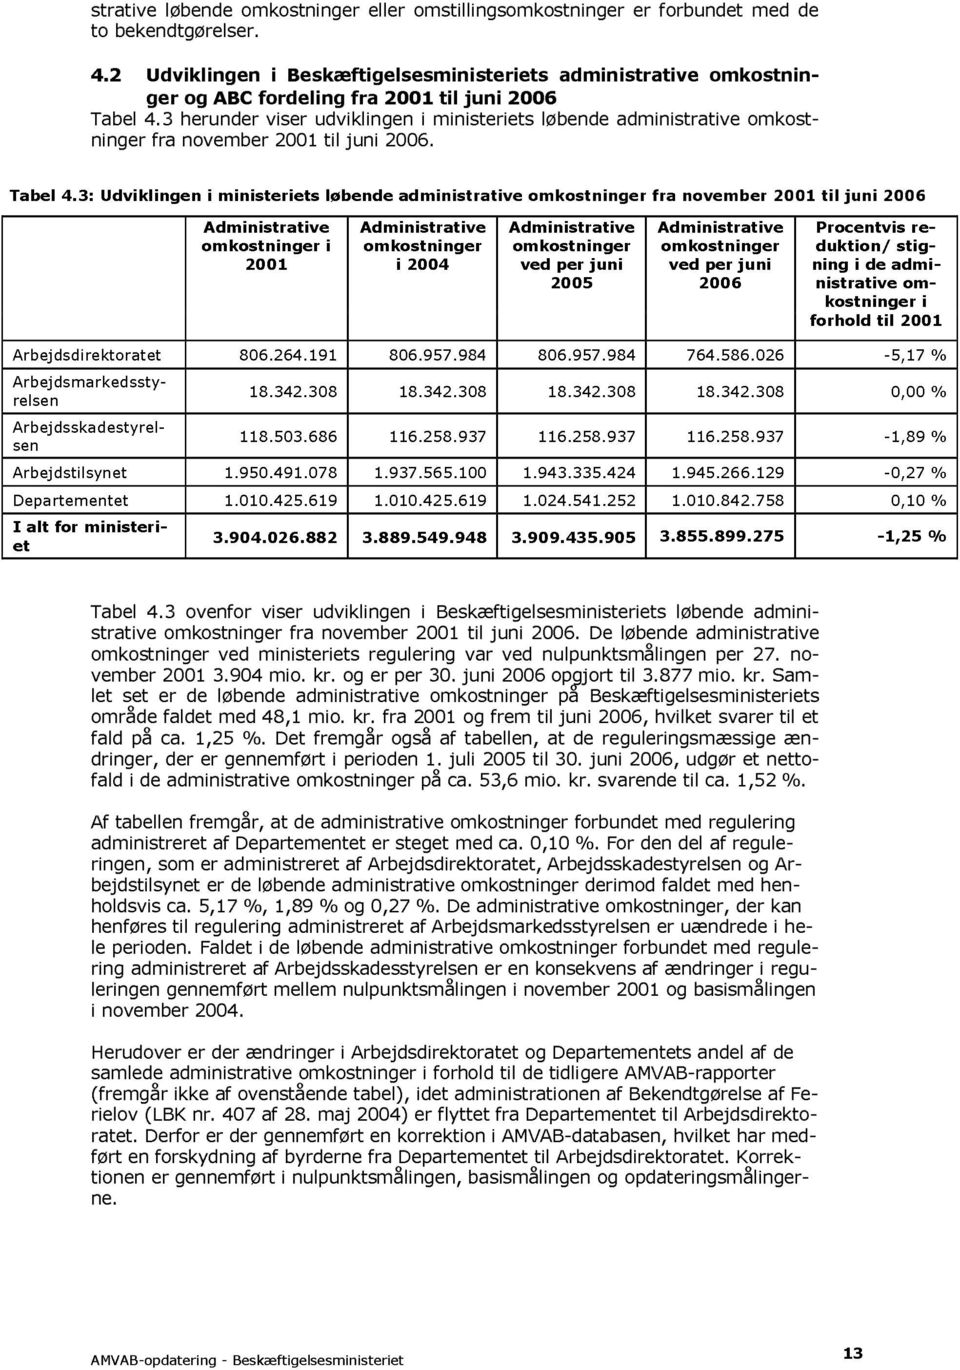 3 herunder viser udviklingen i ministeriets løbende administrative omkostninger fra november 2001 til juni 2006. Tabel 4.